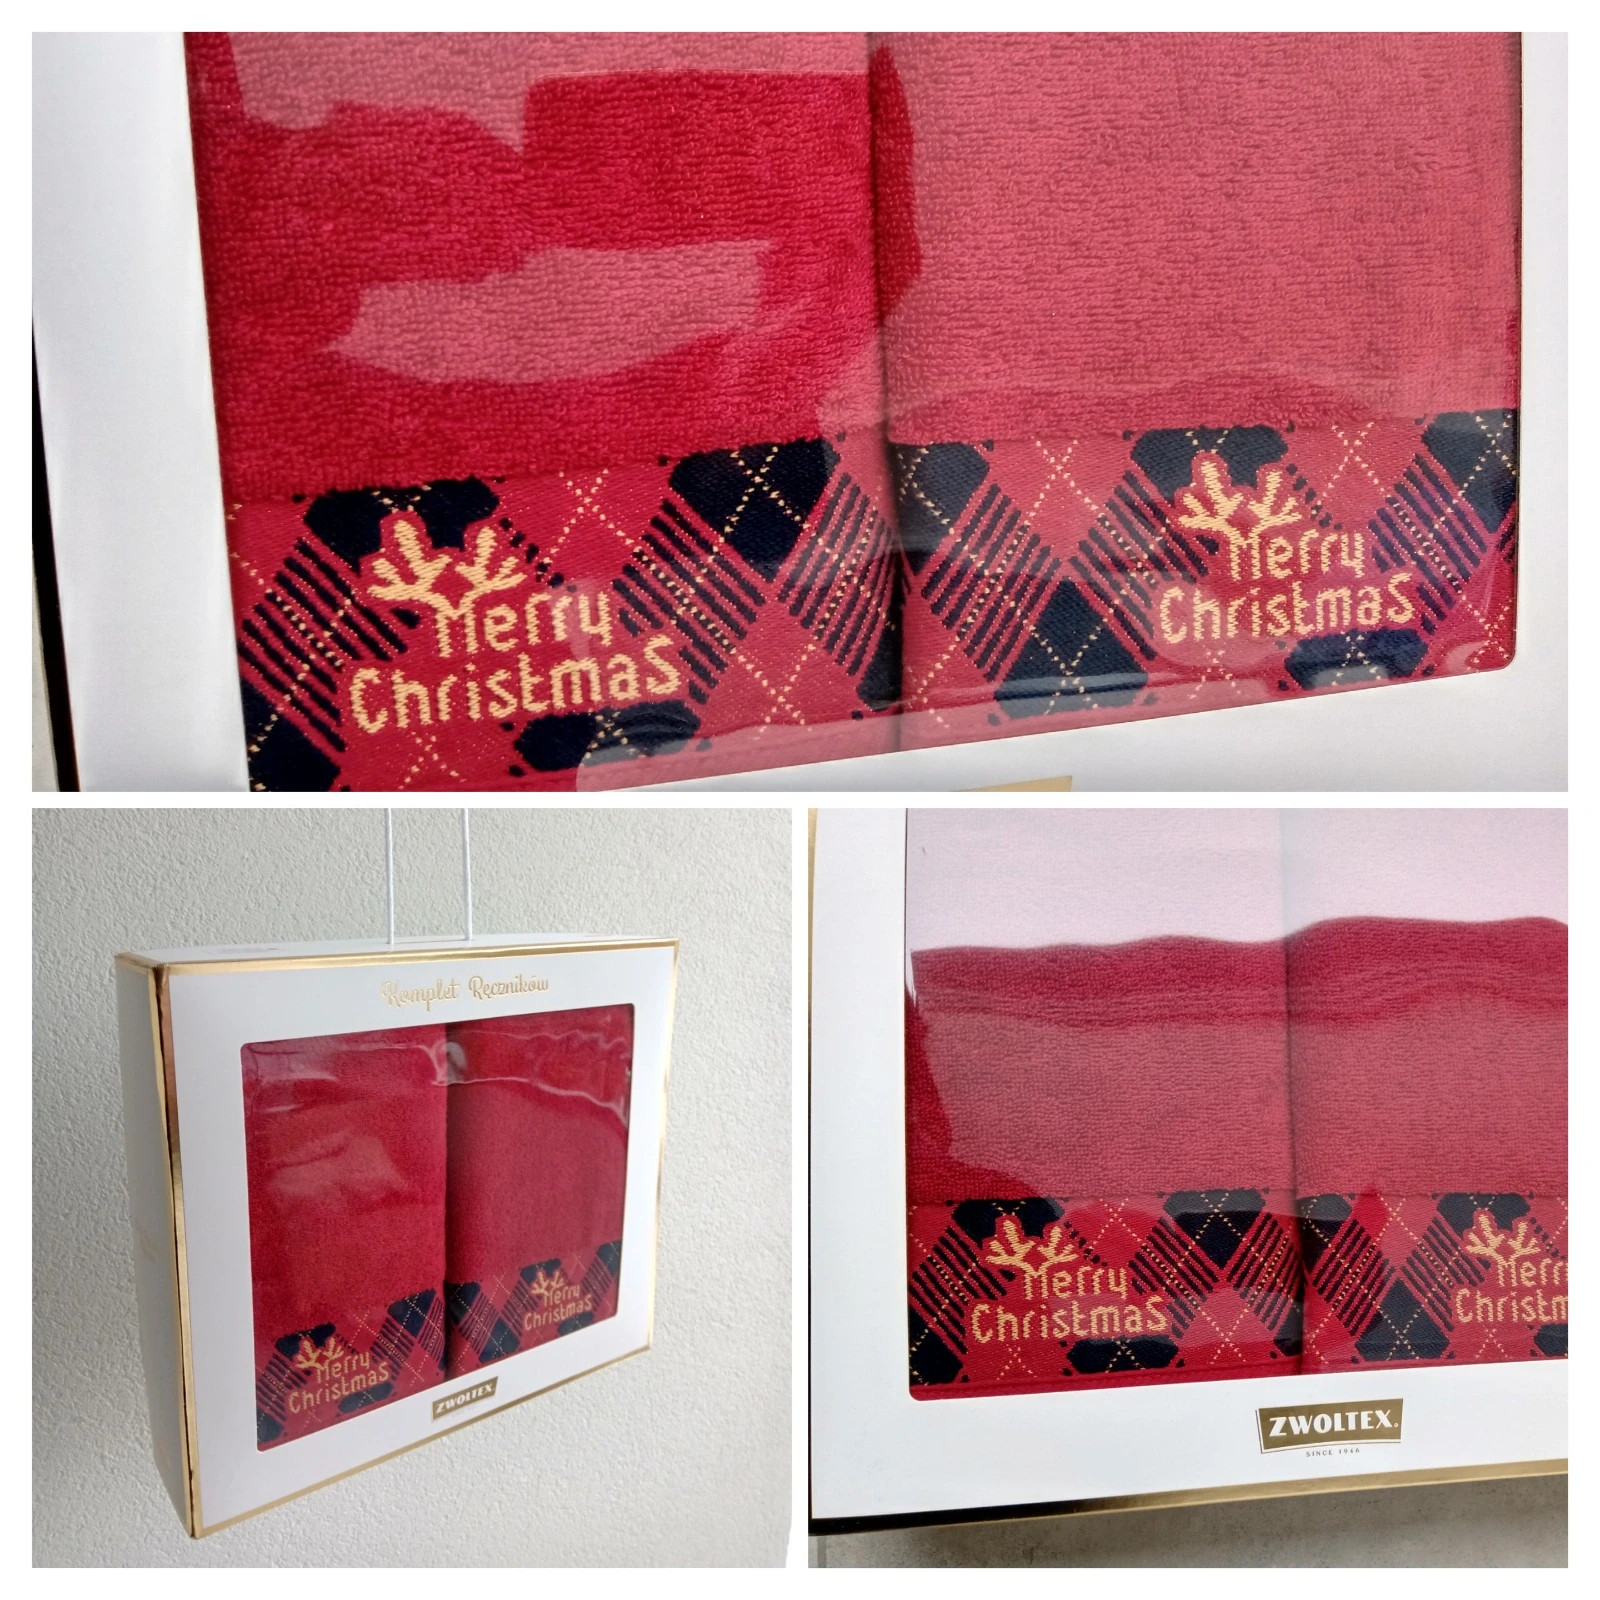 Komplet ręczników zestaw świąteczny Zwoltex Rudolf bordo 2 sztuki na prezent nowe z opakowaniem